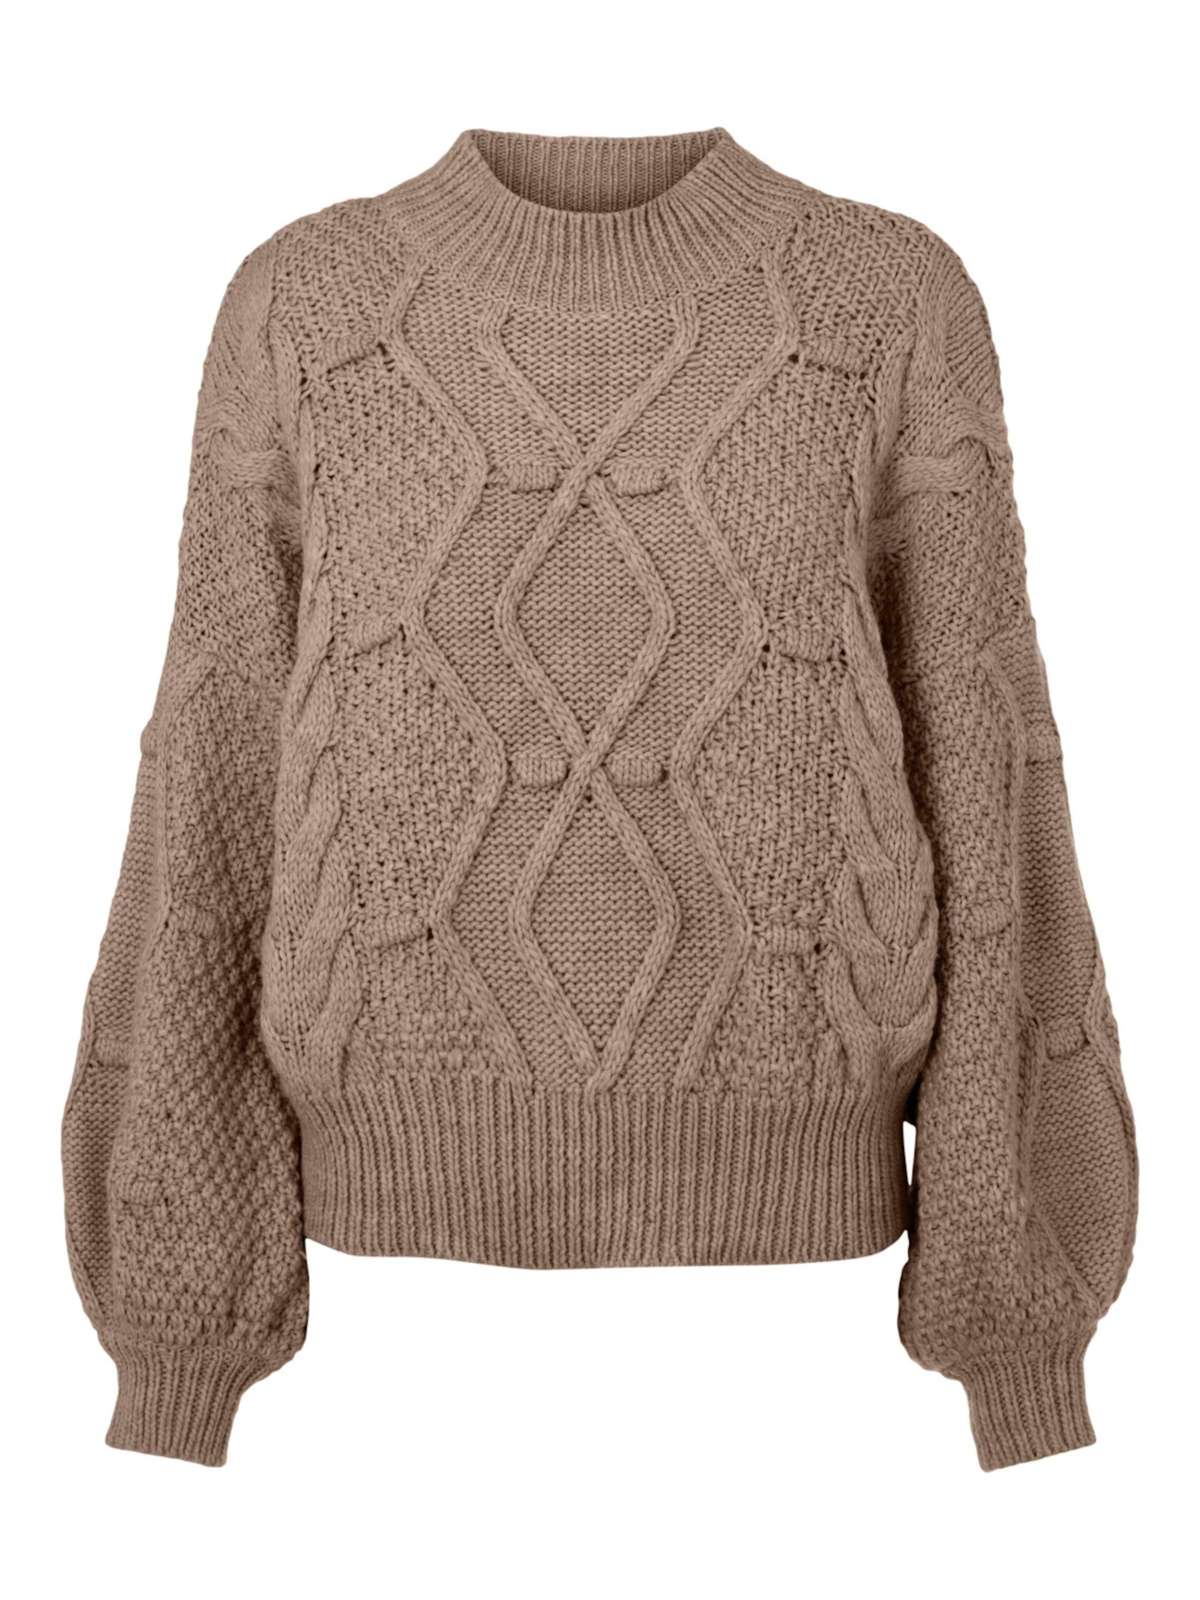 Вязаный свитер КАММА (1 шт.) однотонный/без деталей